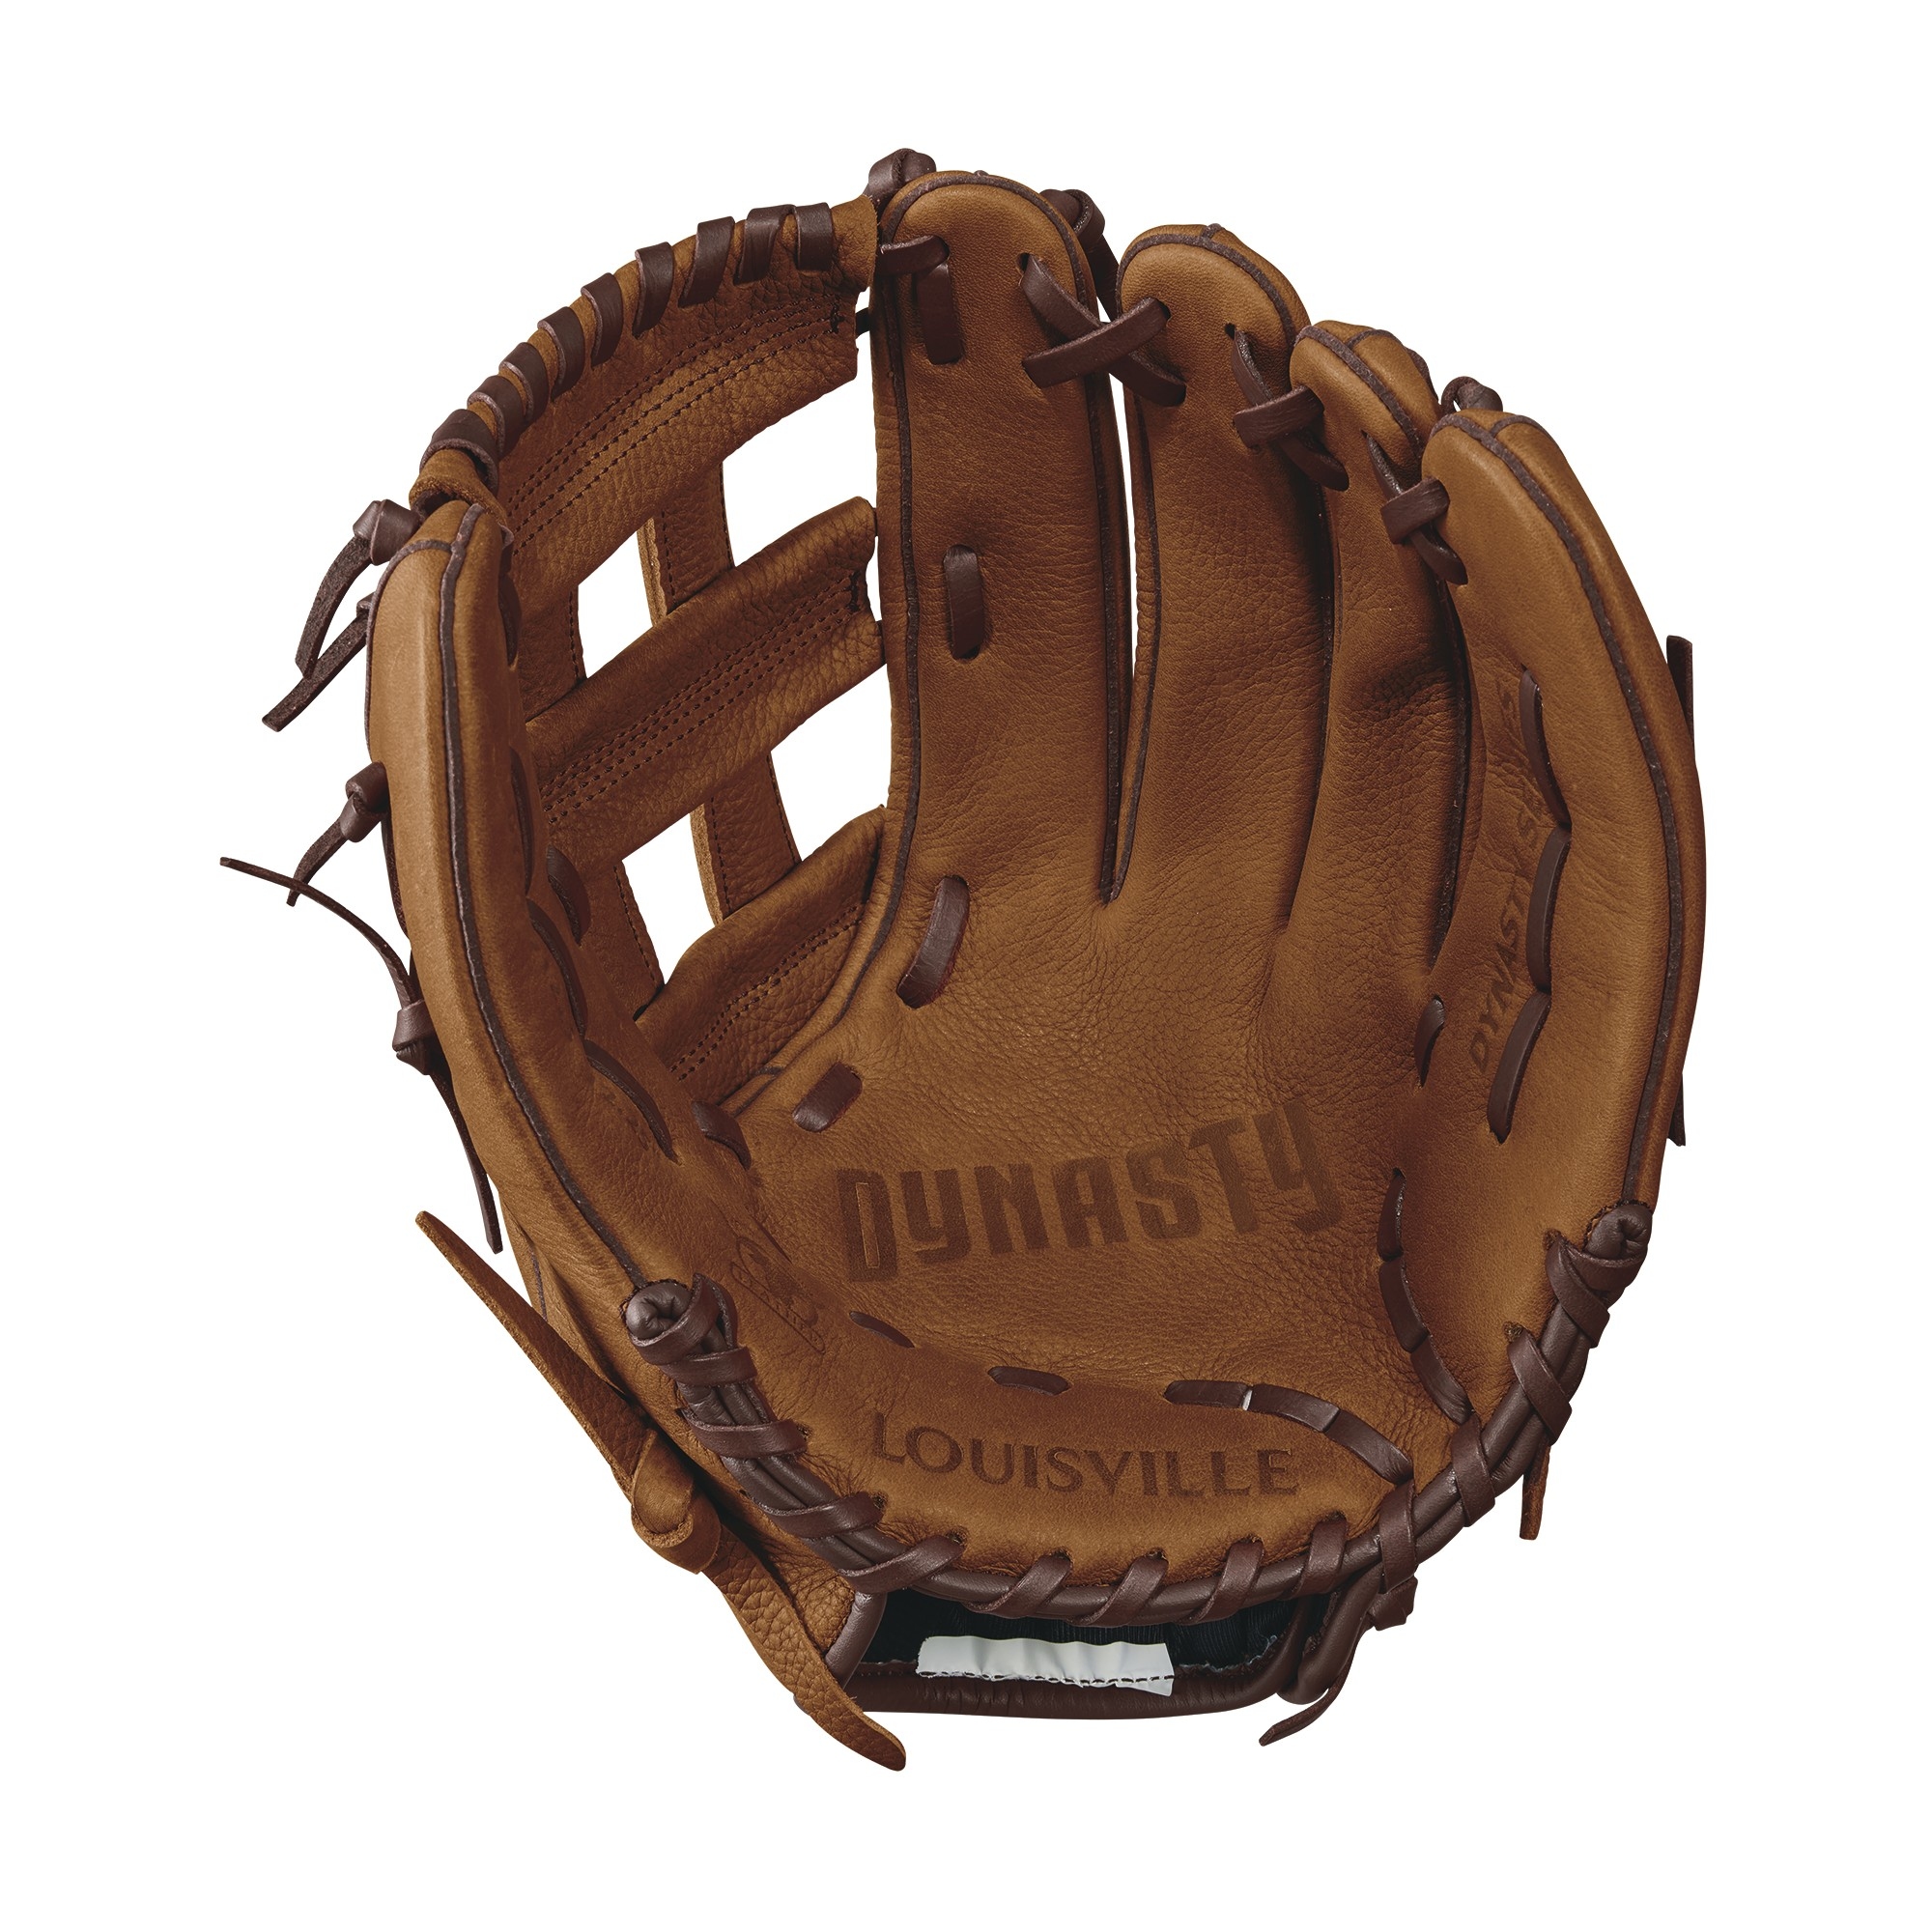 Louisville Slugger Dynasty DYRB171225 12.25 inch Youth Baseball Glove